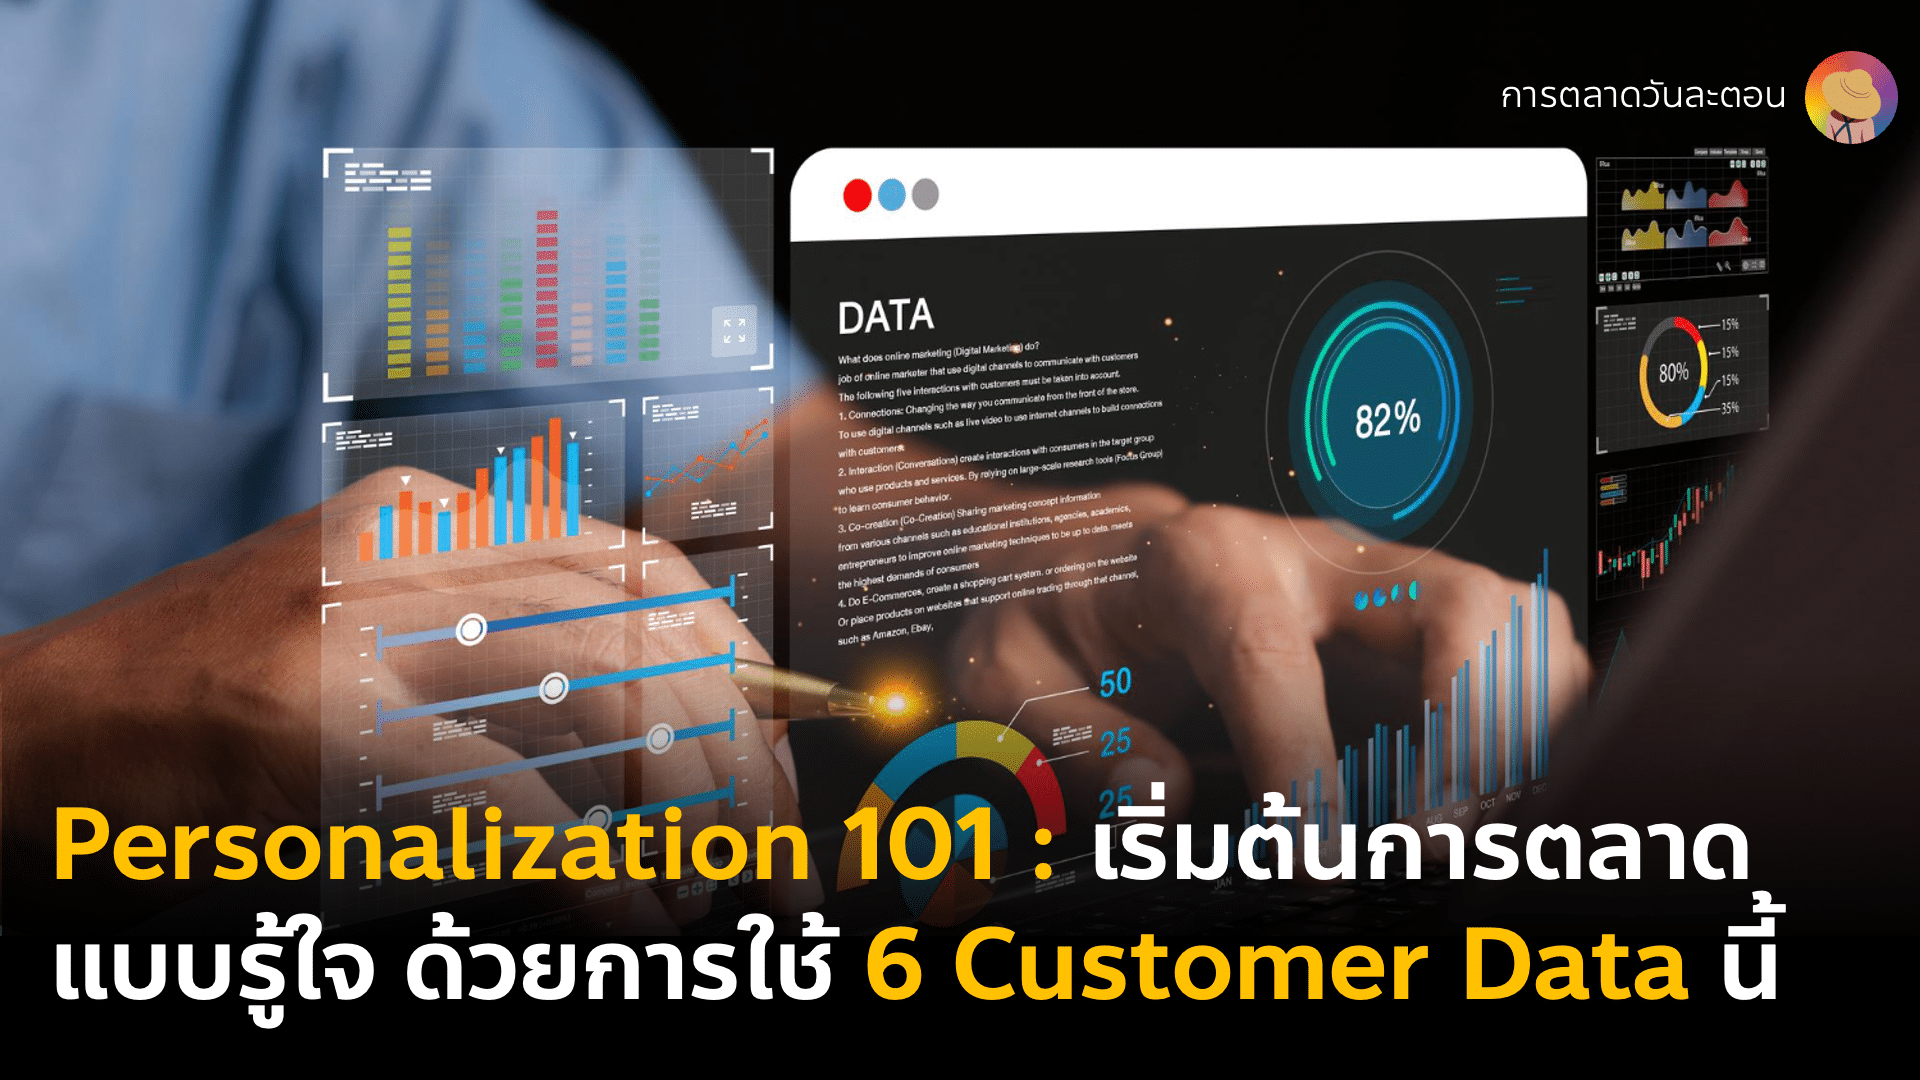 Personalization 101 : 6 Customer Data ที่ต้องเก็บถ้าอยากทำการตลาดแบบรู้ใจ